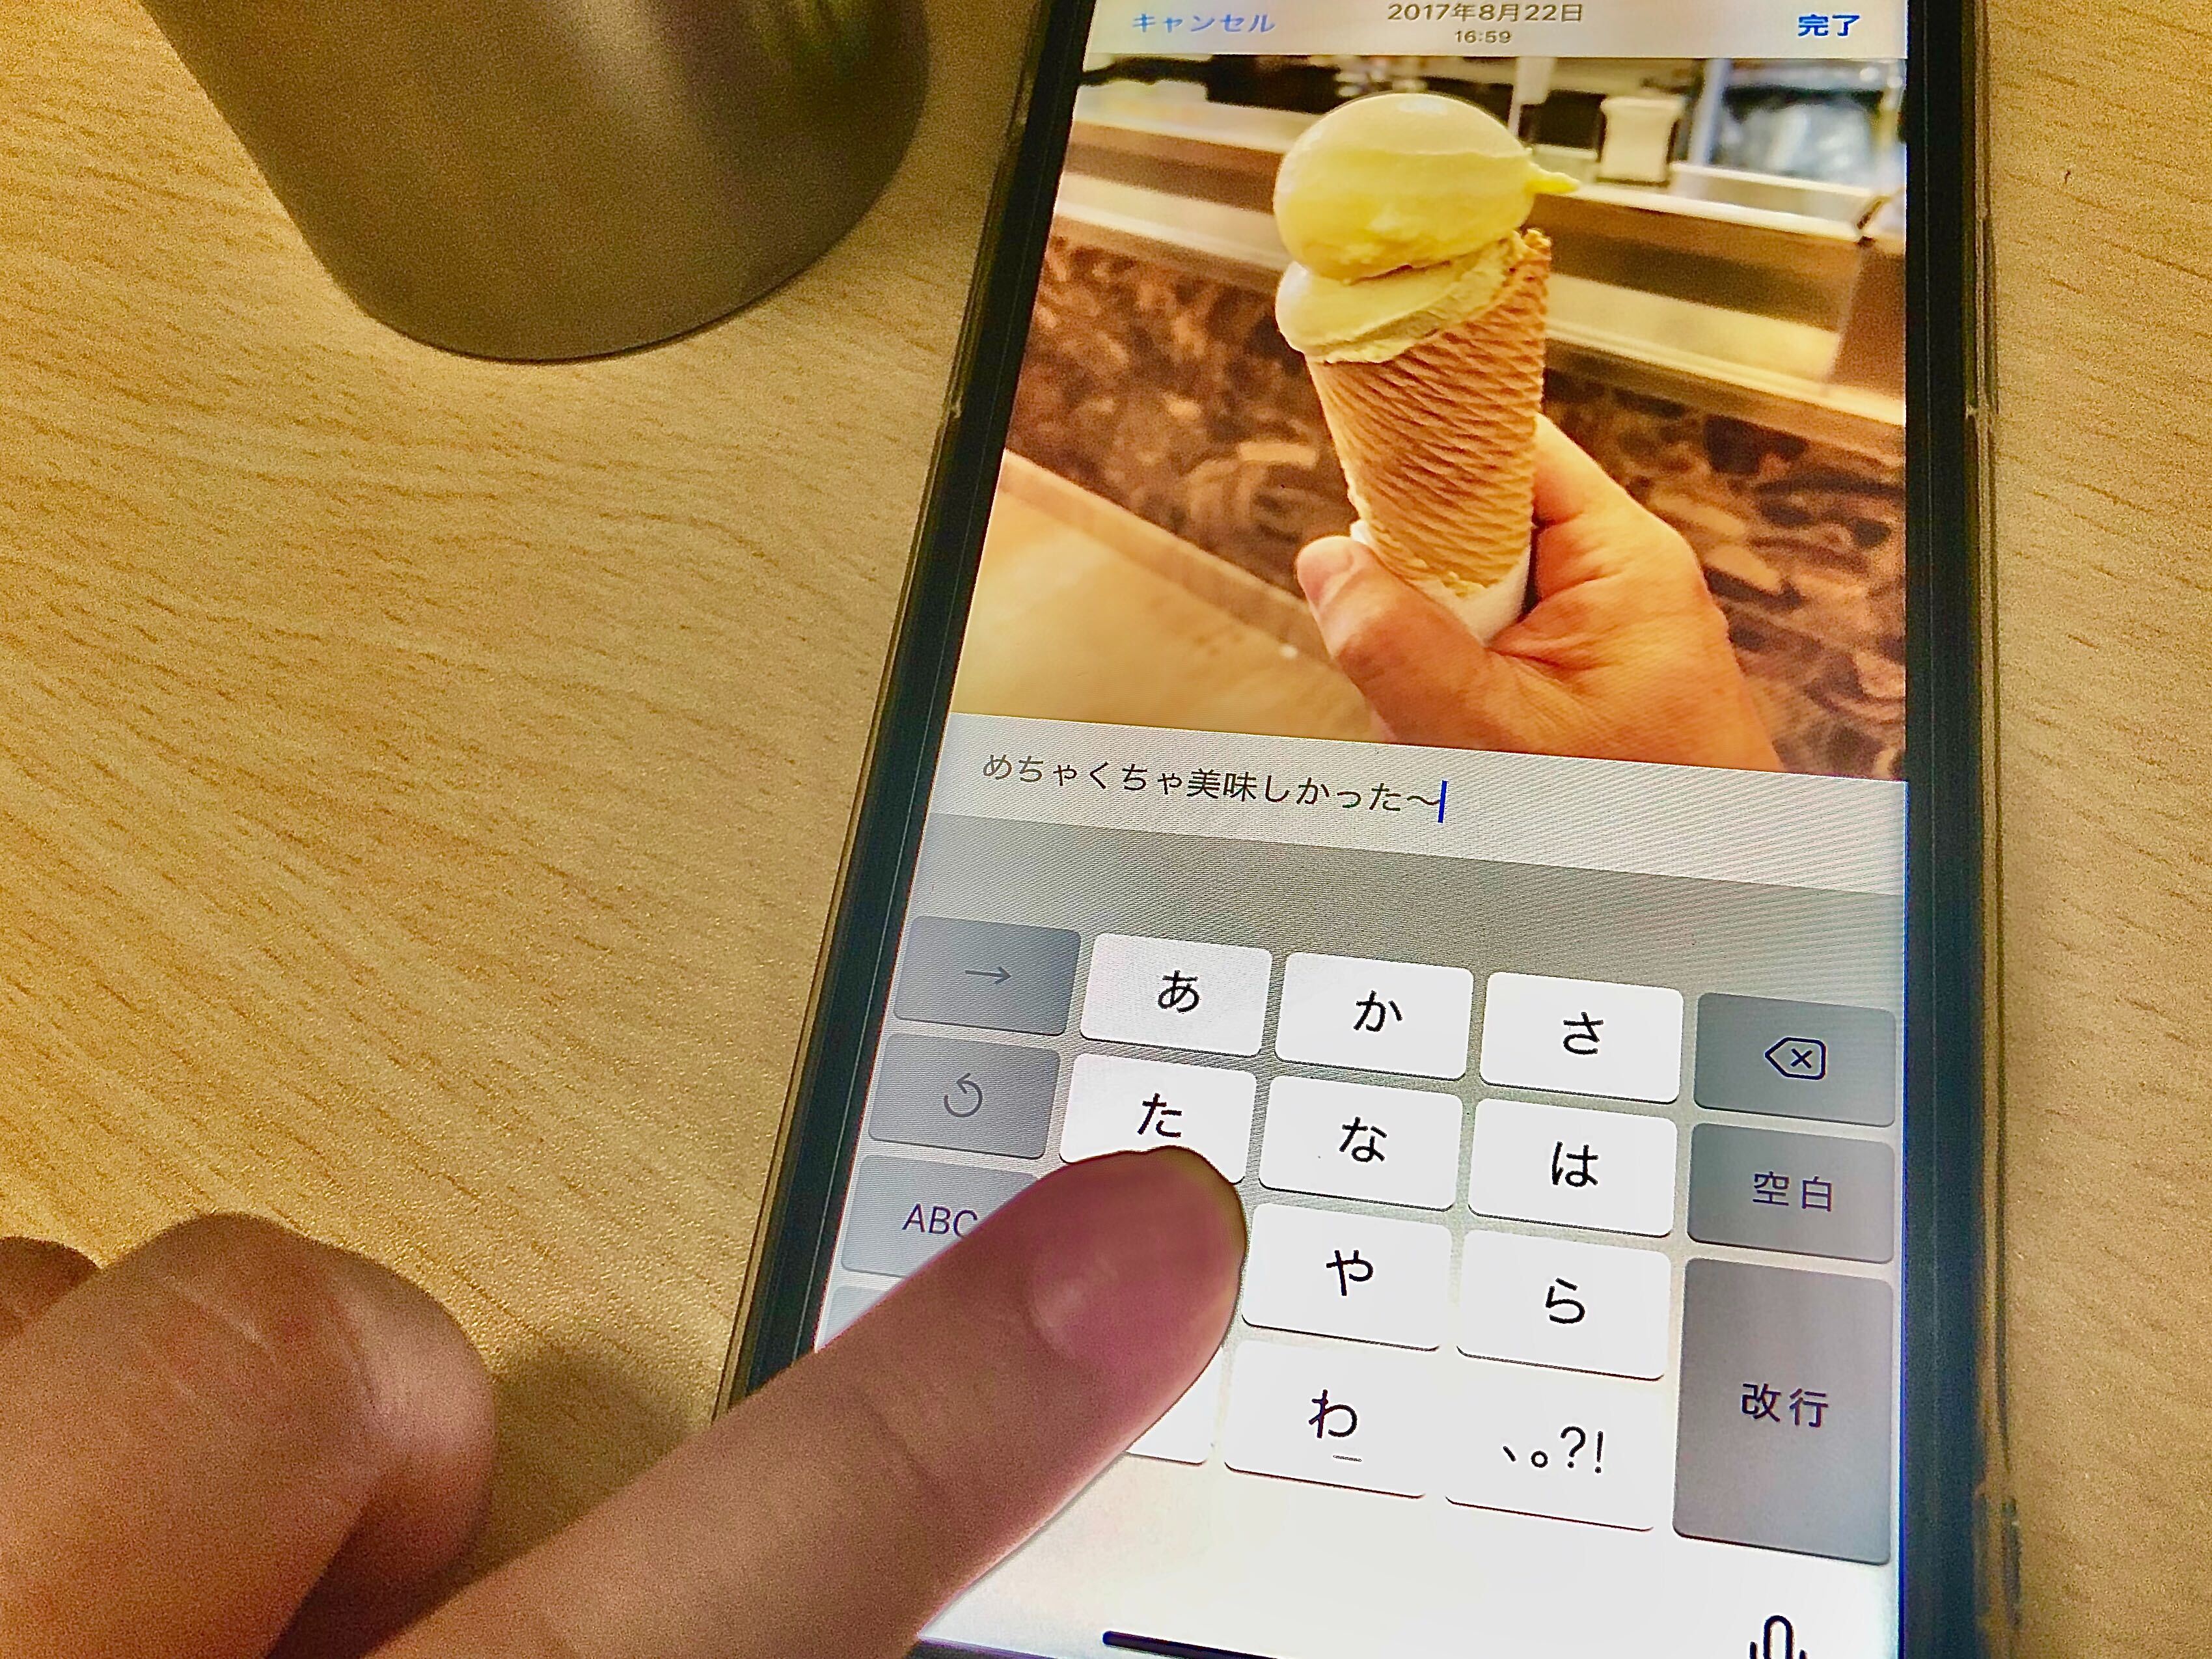 検索も楽チン 写真にキャプションがつけられるようになりました Iphone Tips Ios 14 パブリックベータ Engadget 日本版